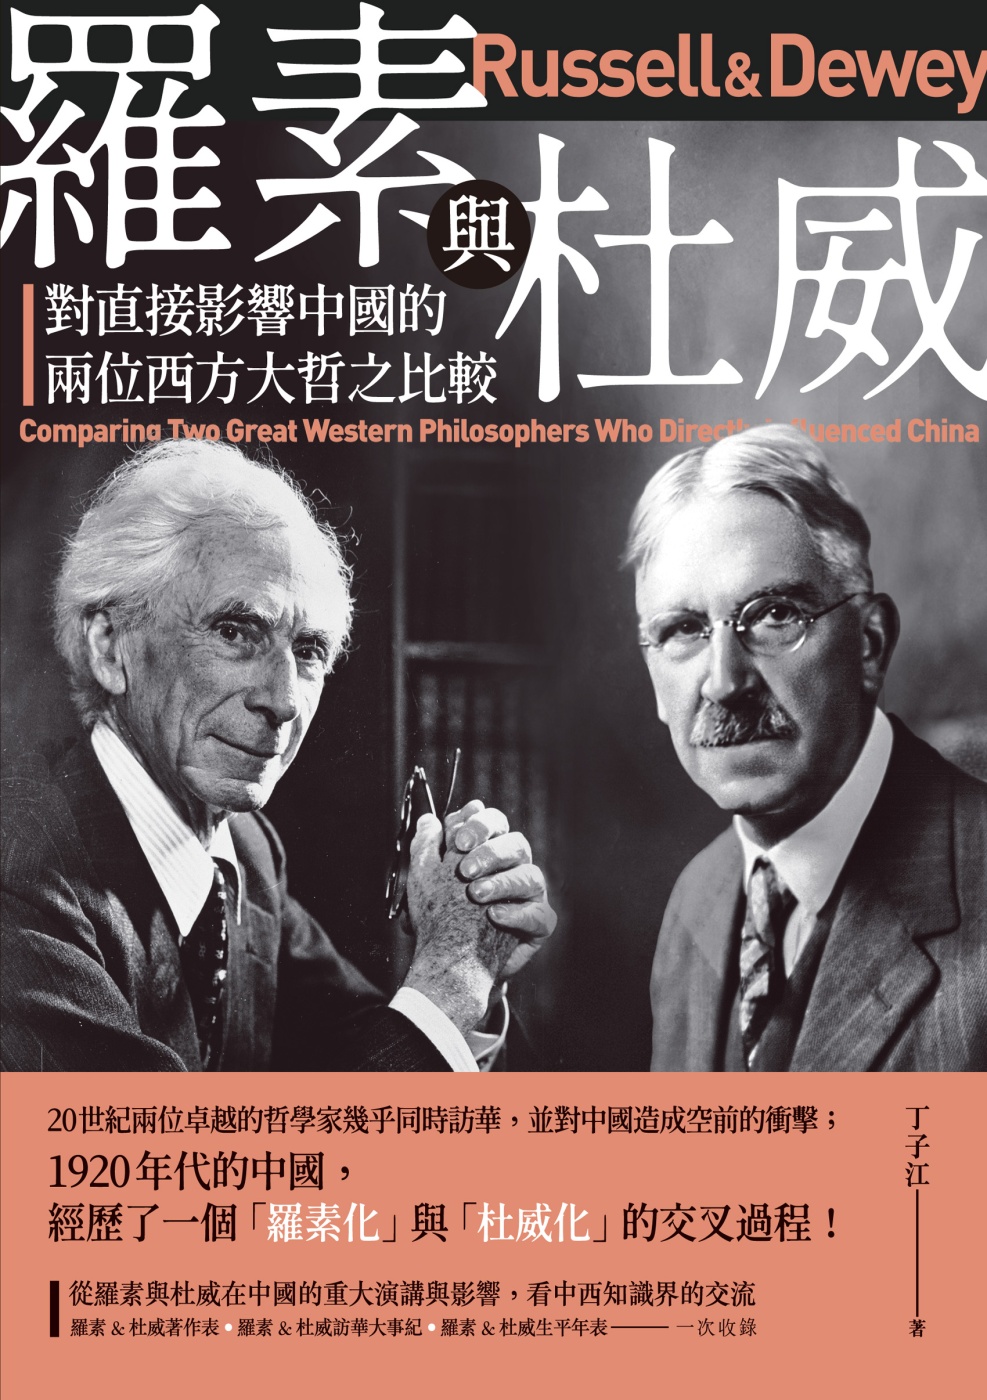 羅素與杜威：對直接影響中國的兩位西方大哲之比較